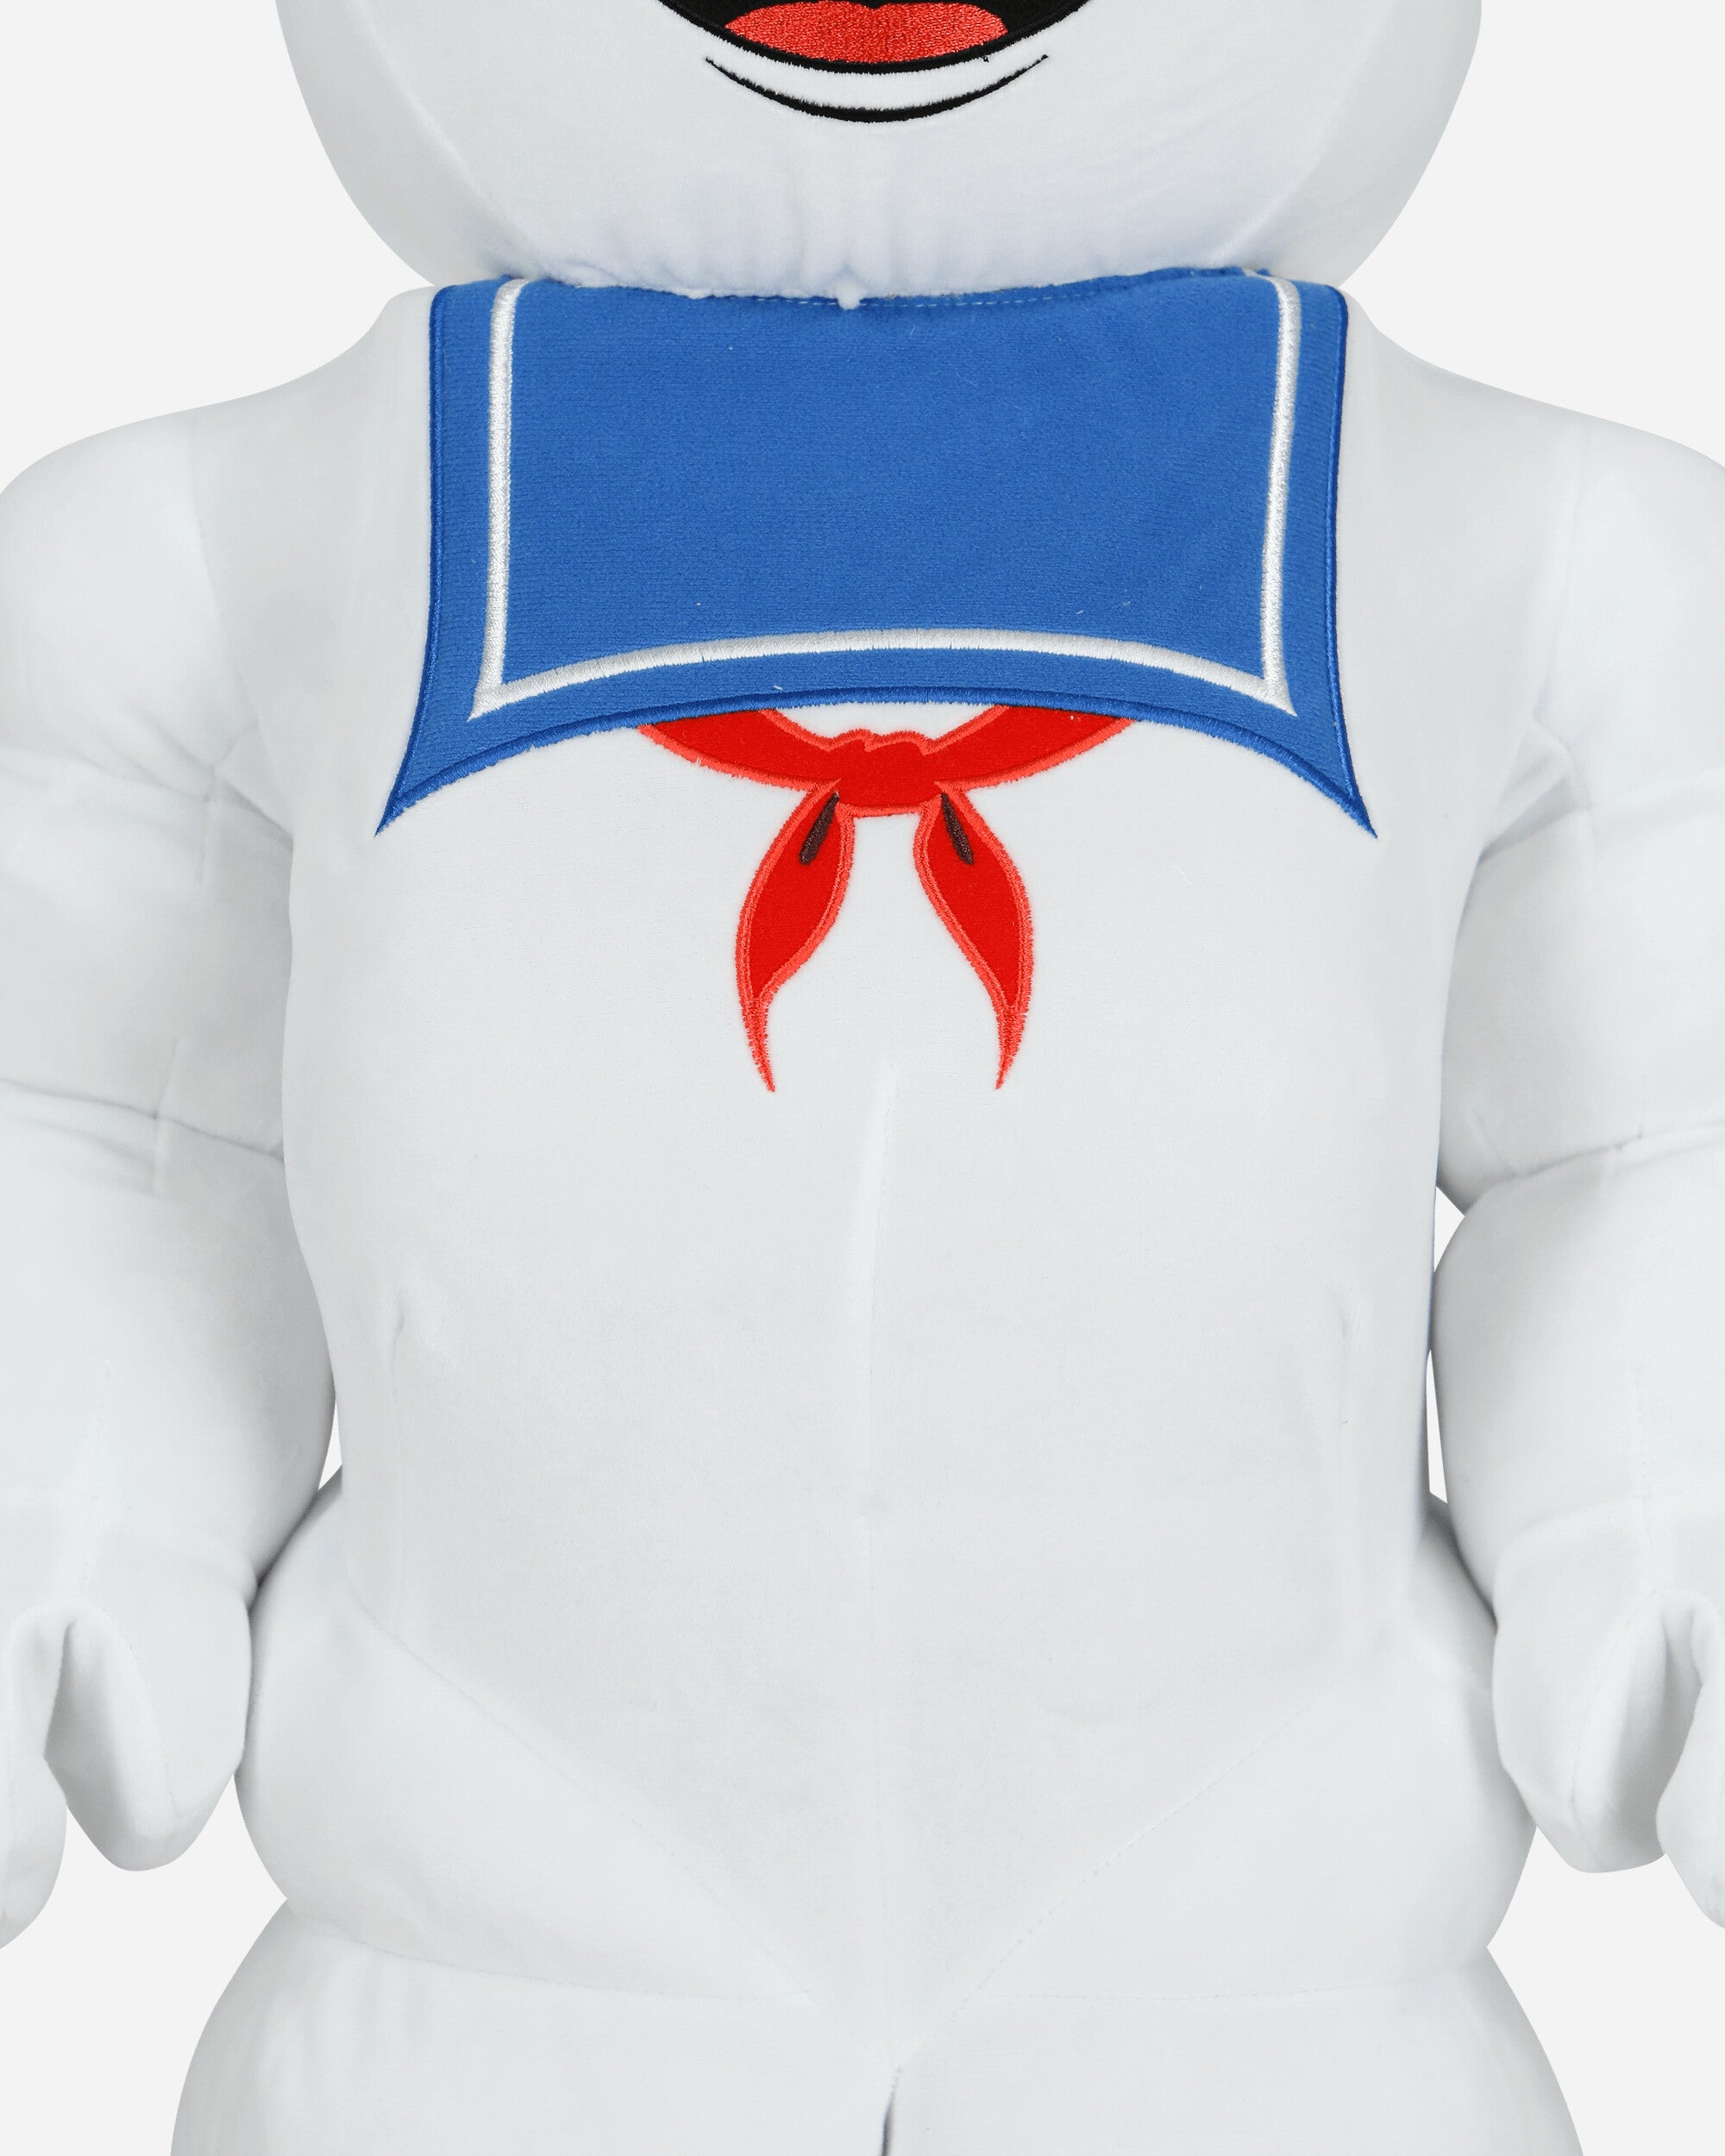 Medicom 1000% Stay Puft Marshmallow Man Costume Ass Homeware Toys F221000SPMC ASS